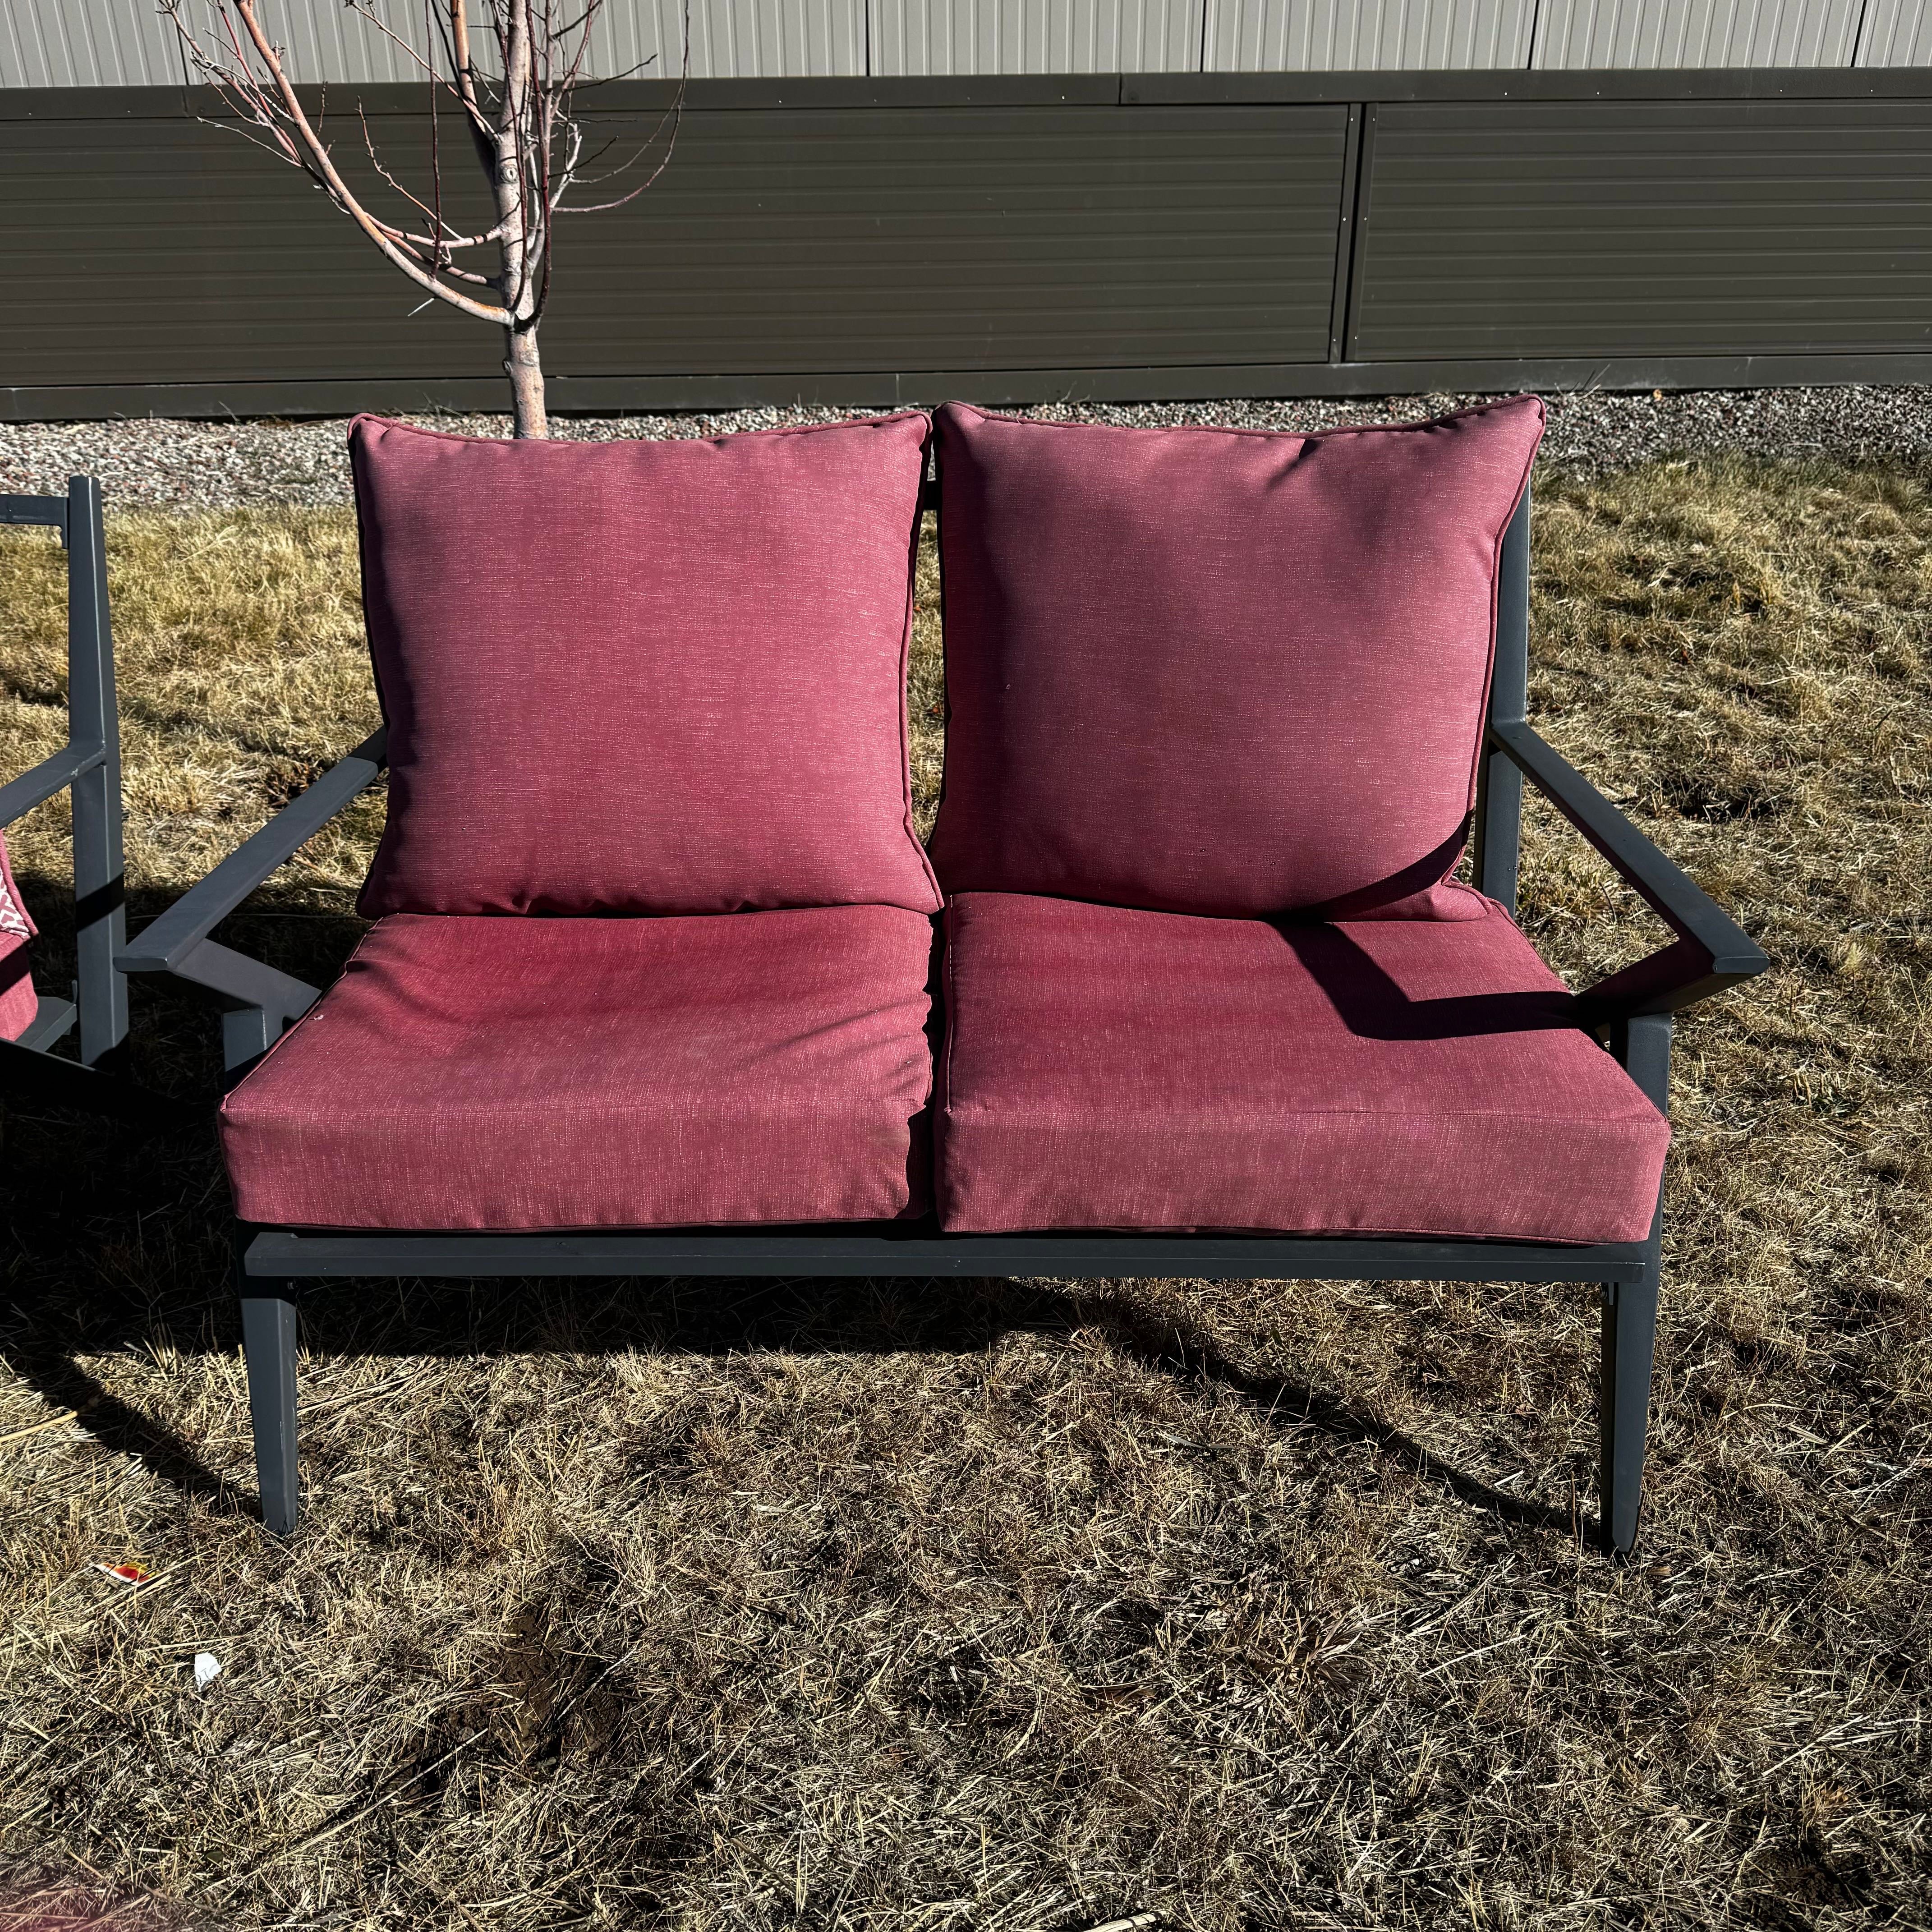 Aluminium Frame Red Detailed Cushion Sofa Chair Patio Set